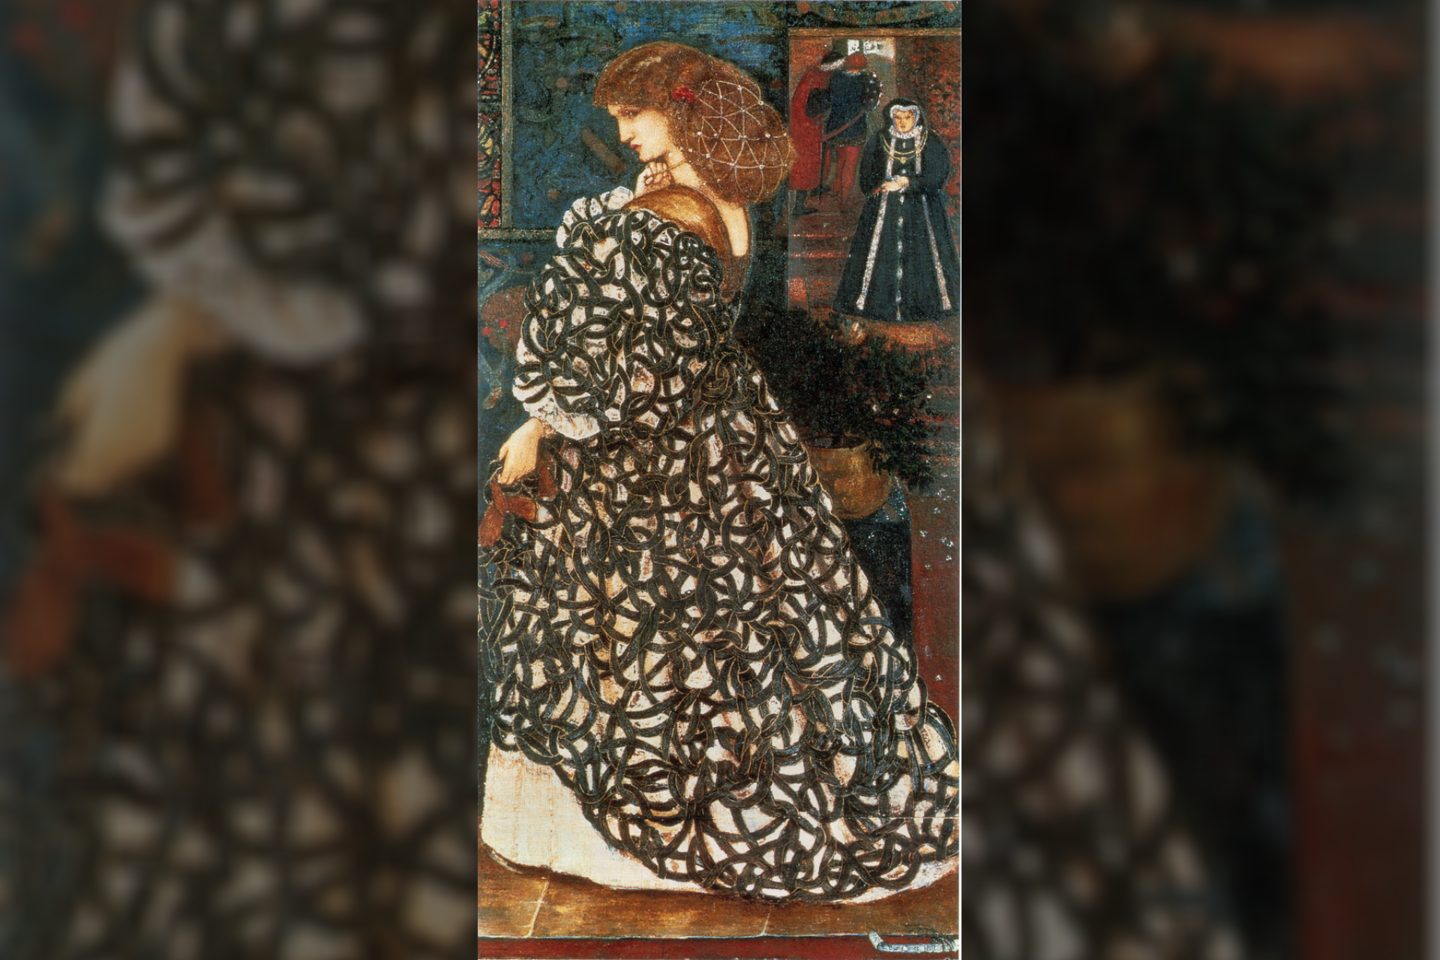  Sydonios von Borck istorija, jos nusikaltimai ir niūrus likimas kėlė susidomėjimą ištisus šimtmečius. <br> Edwardo Burne-Joneso pav. (1860 m.)